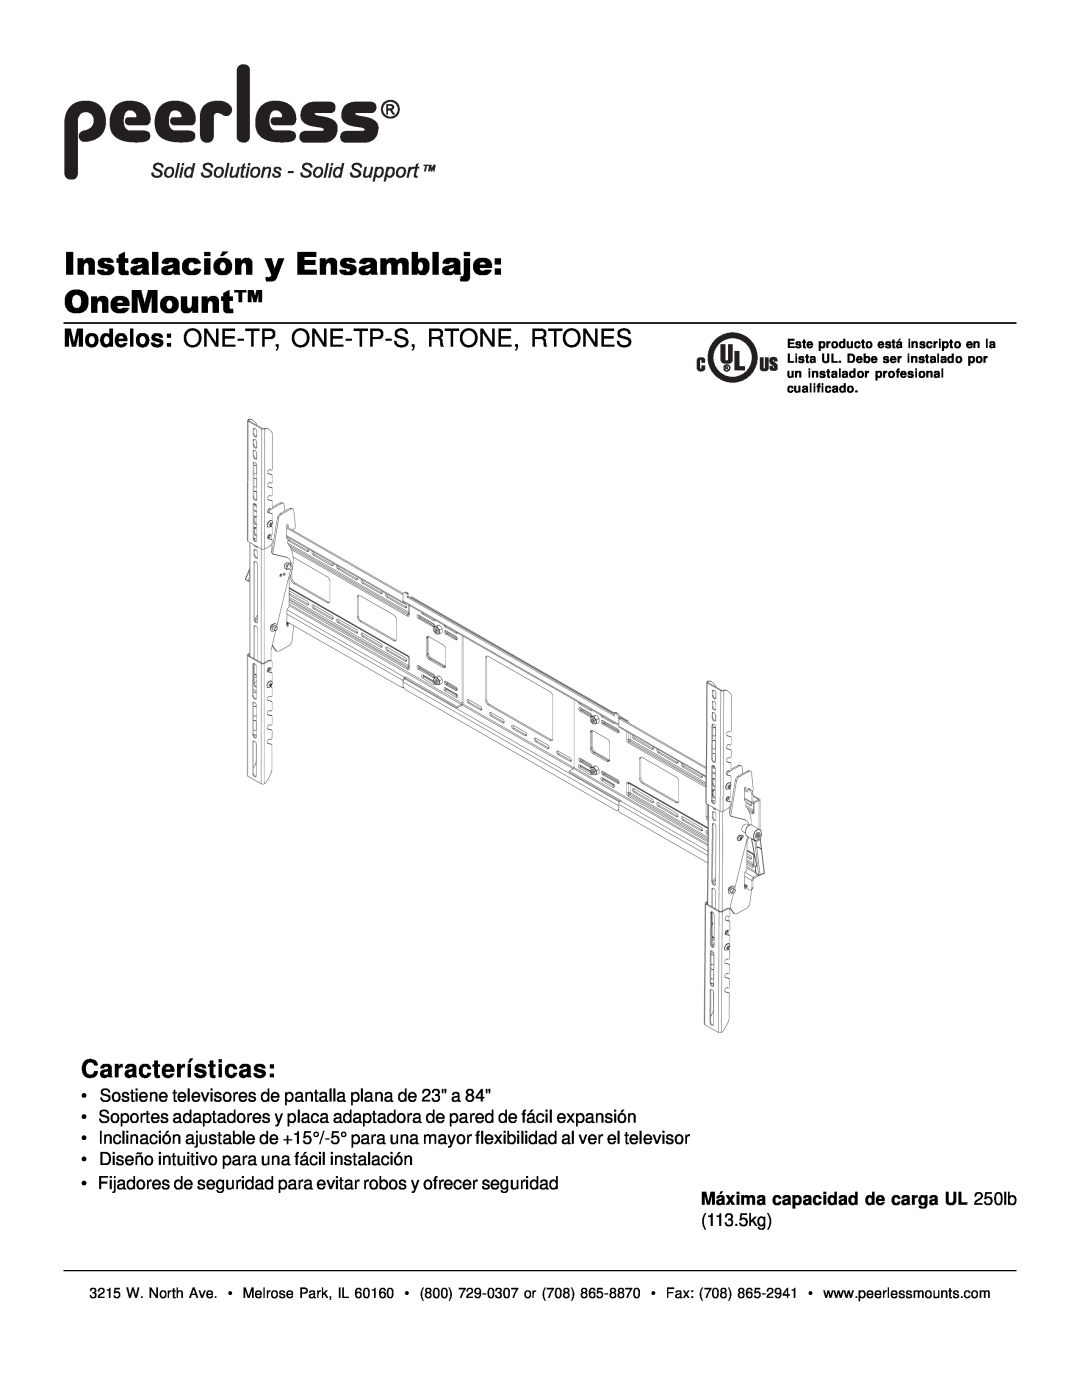 Peerless Industries manual Instalación y Ensamblaje OneMount, Modelos ONE-TP, ONE-TP-S,RTONE, RTONES, Características 